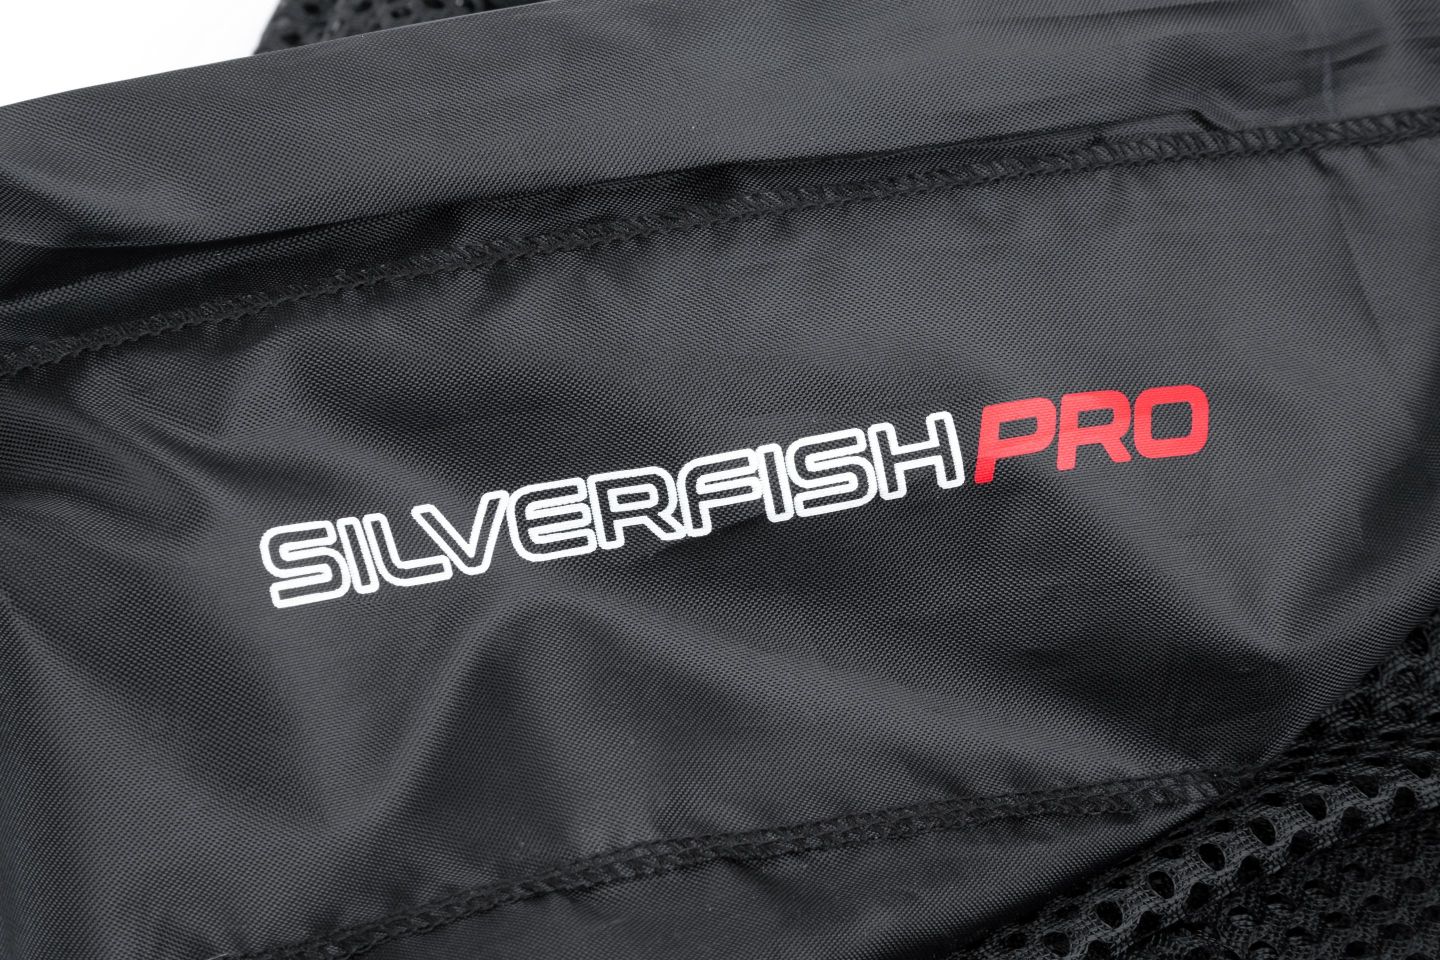 Nytro Silverfish Pro Weighted Nassa